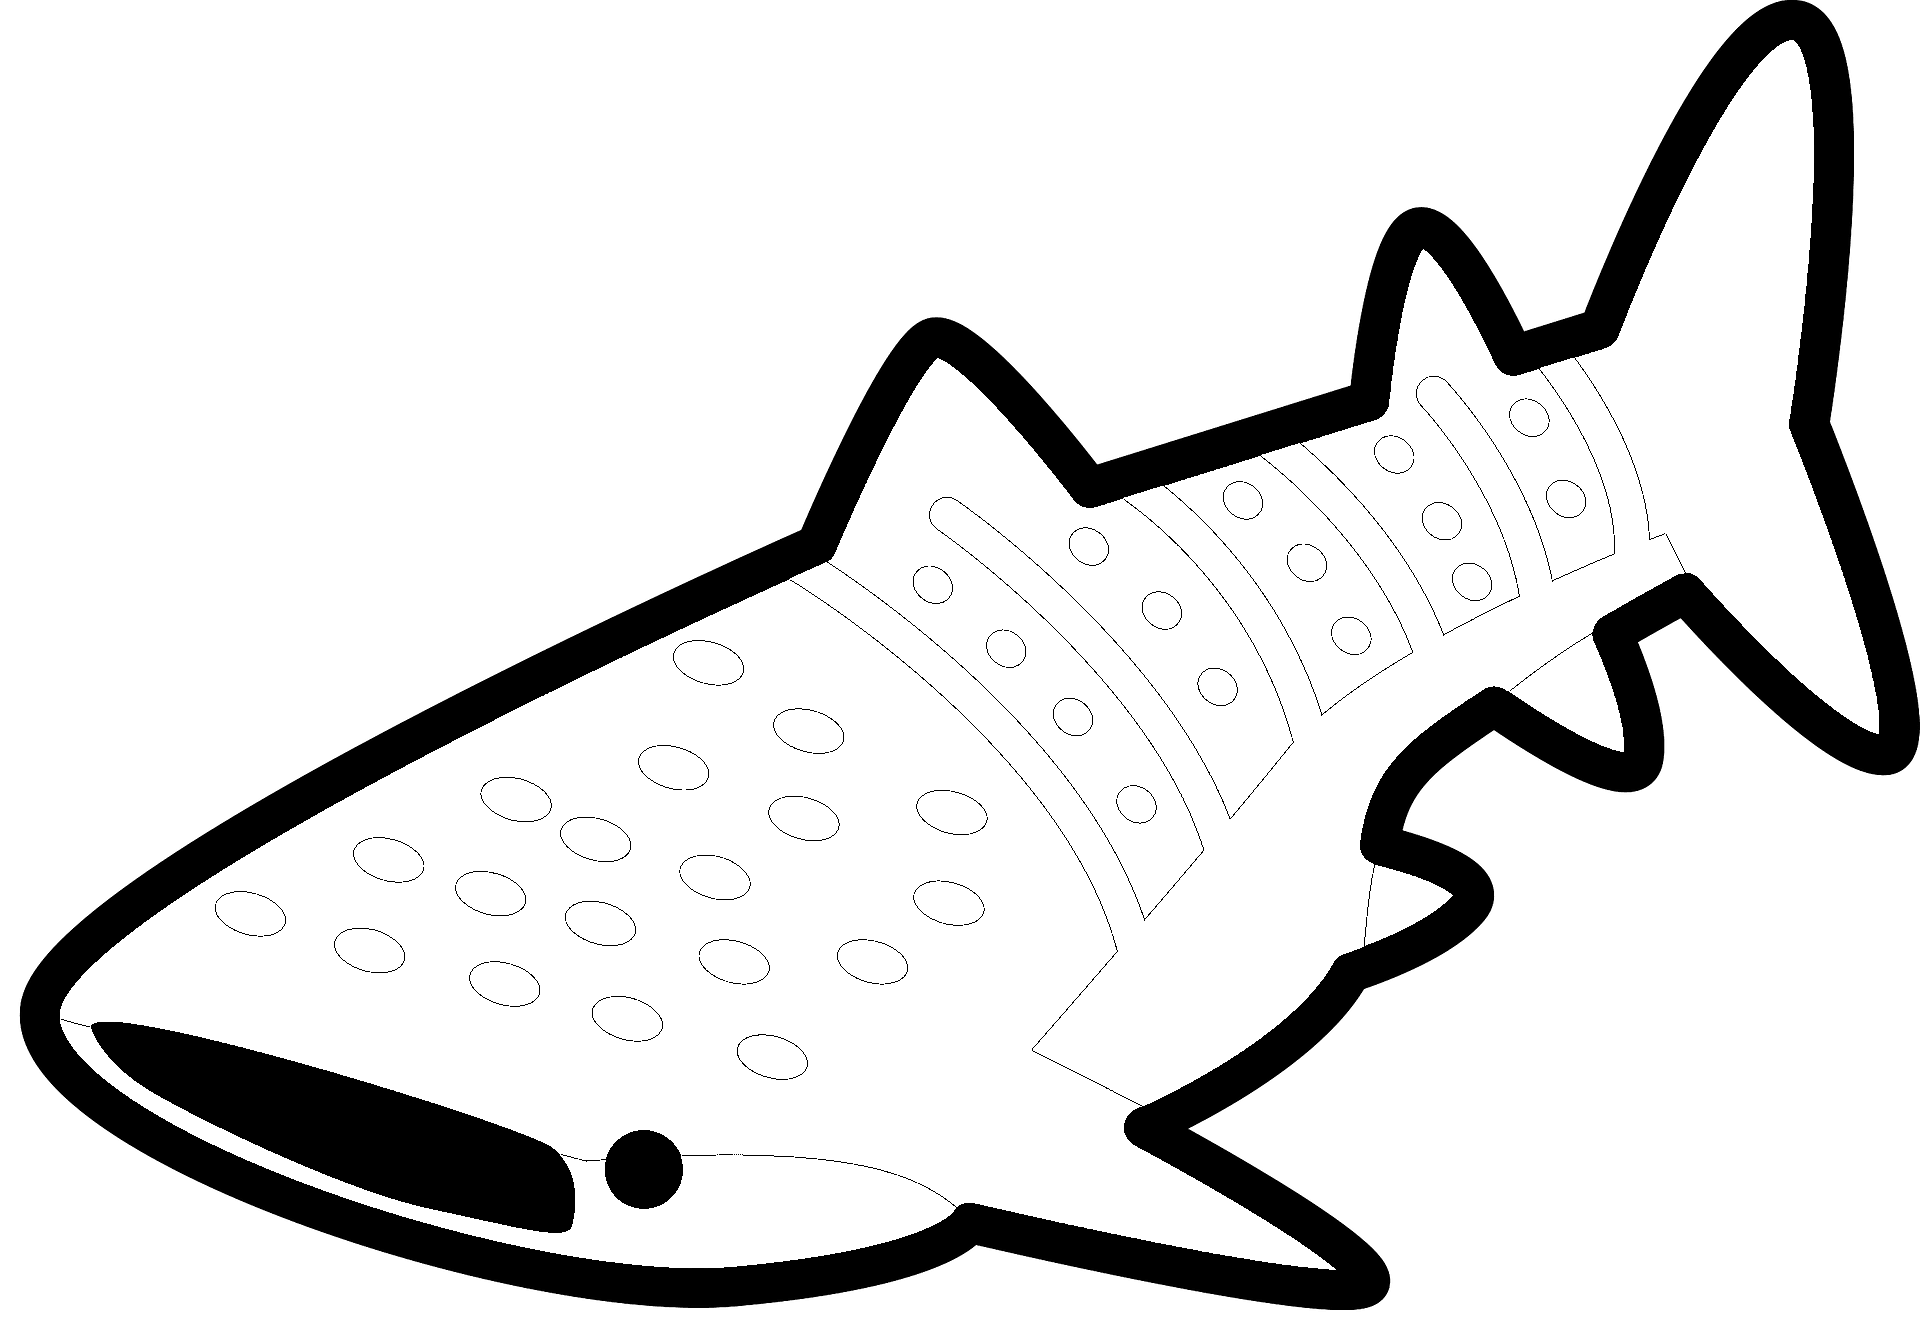 Dibujo para colorear de un tiburón